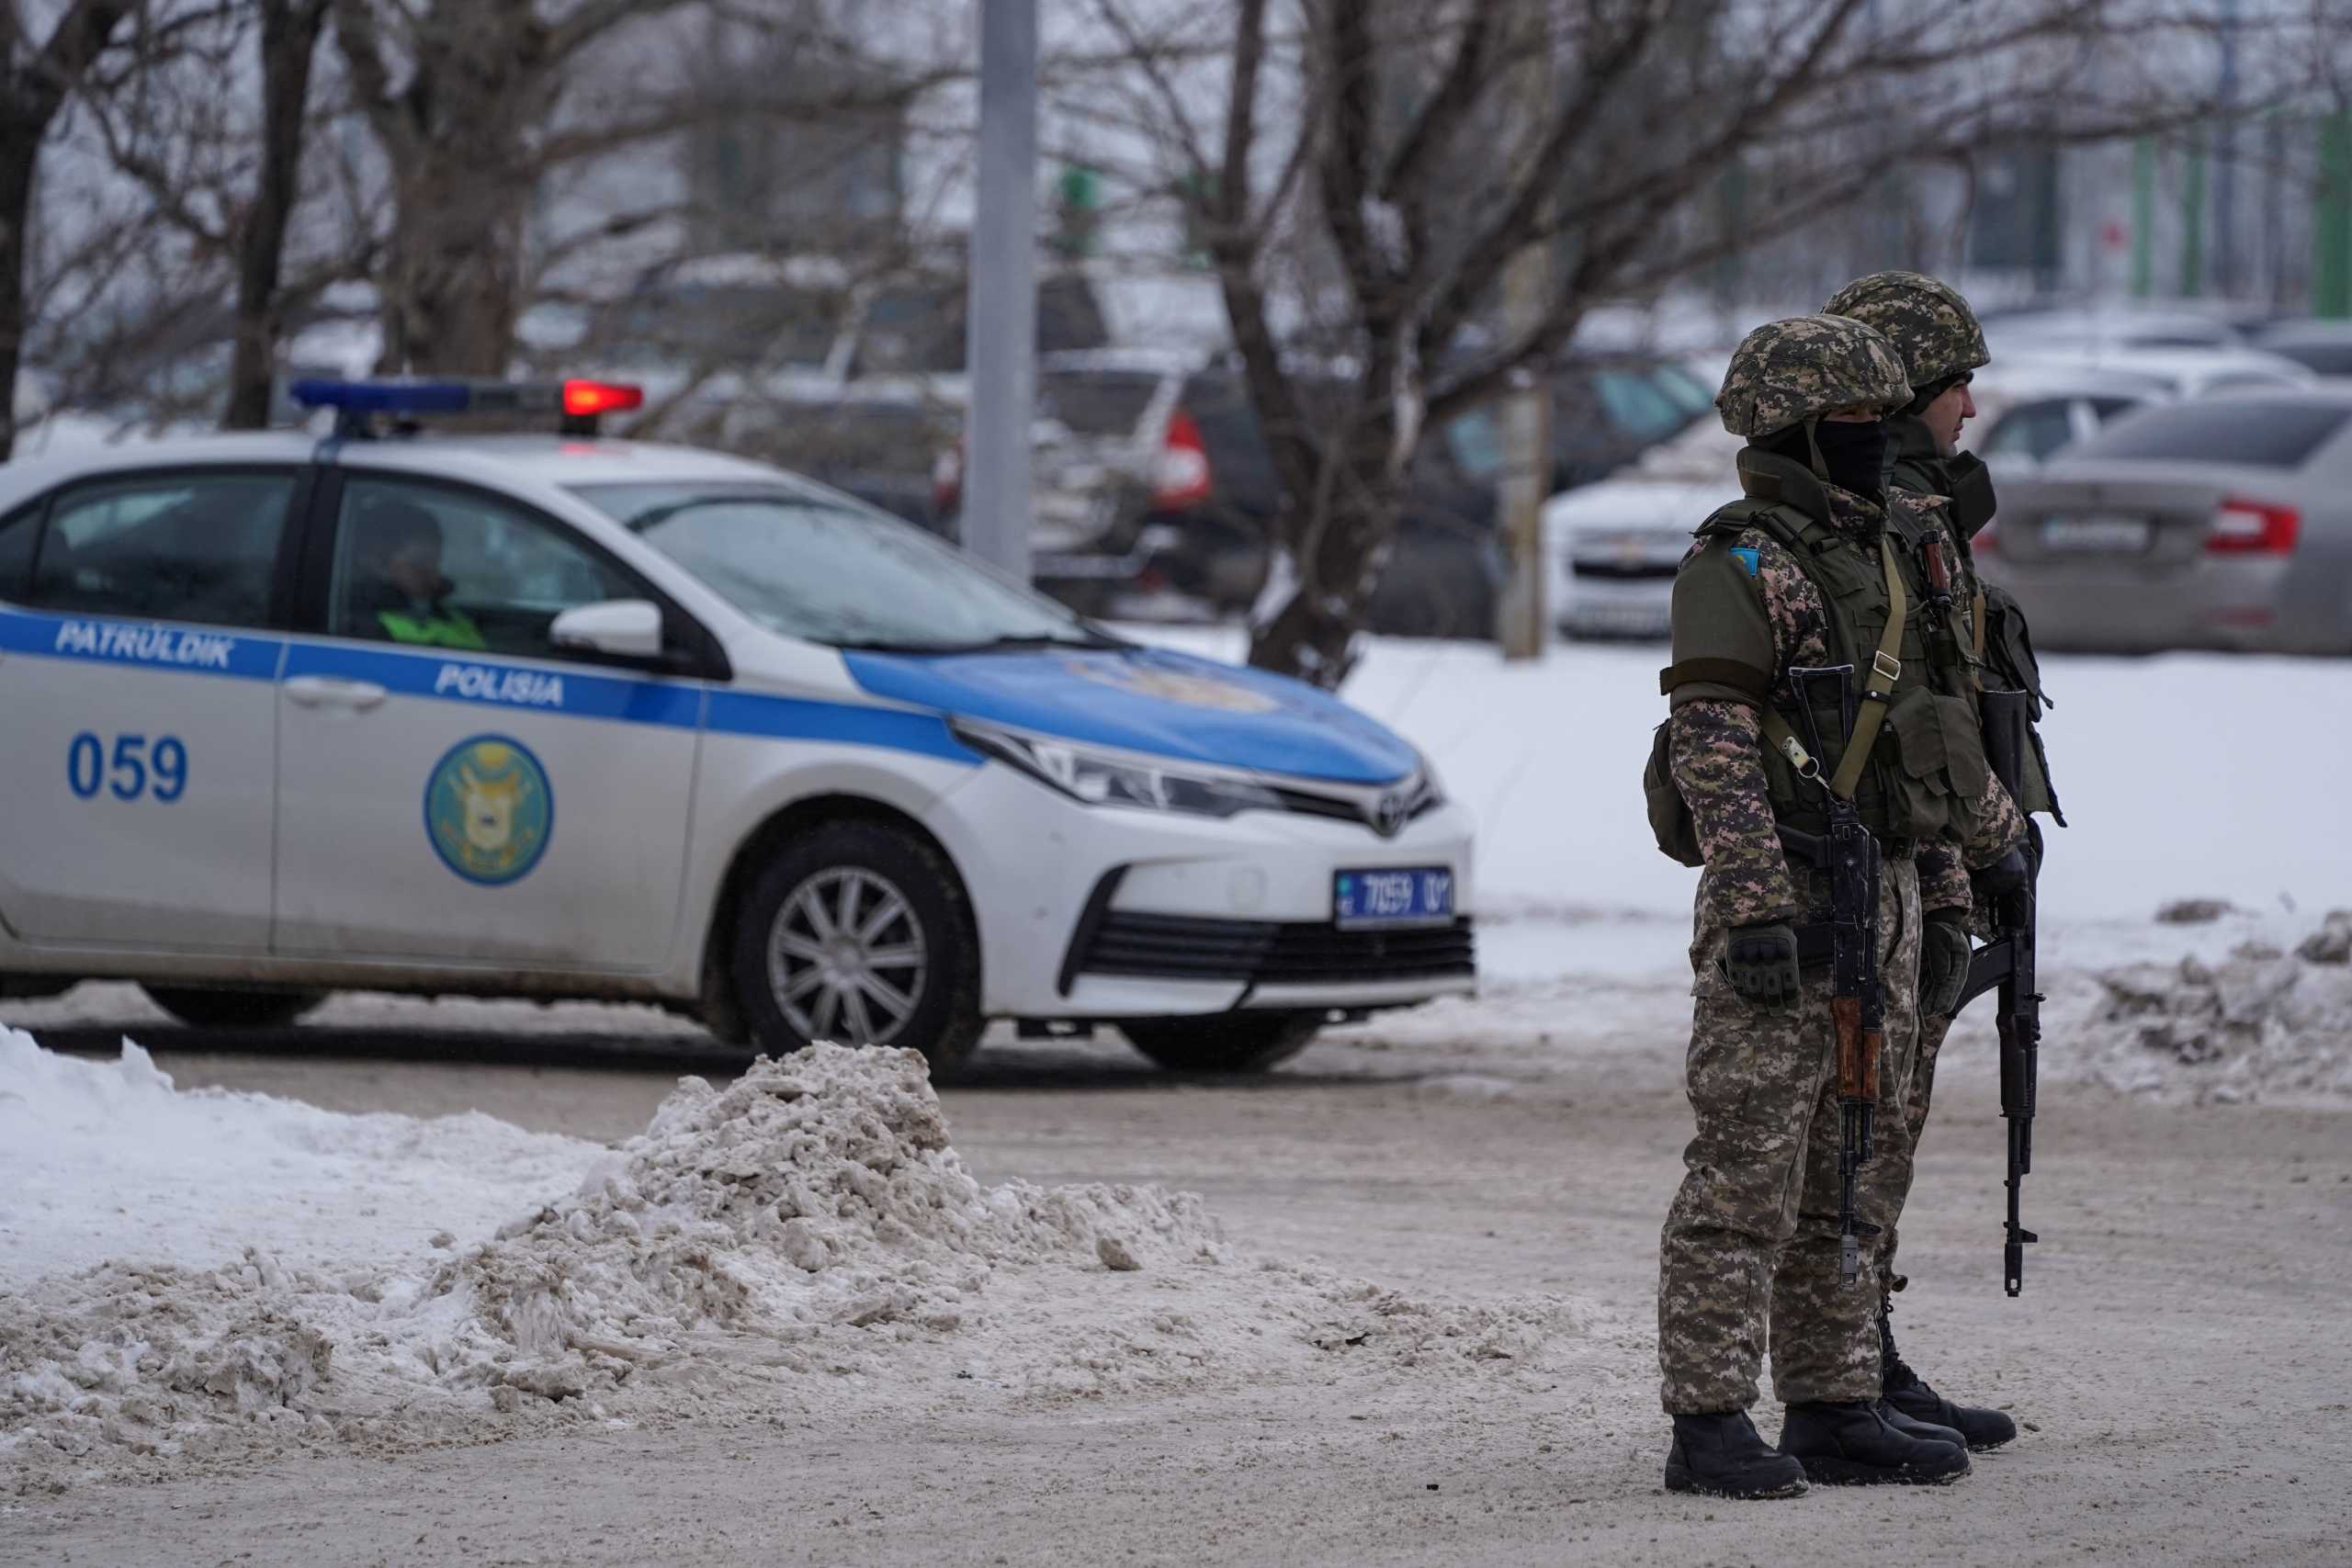 Καζακστάν: Καρατόμηση ακόμα δύο στελεχών των δυνάμεων ασφαλείας – Για σταθεροποίηση της κατάστασης μιλά η κυβέρνηση